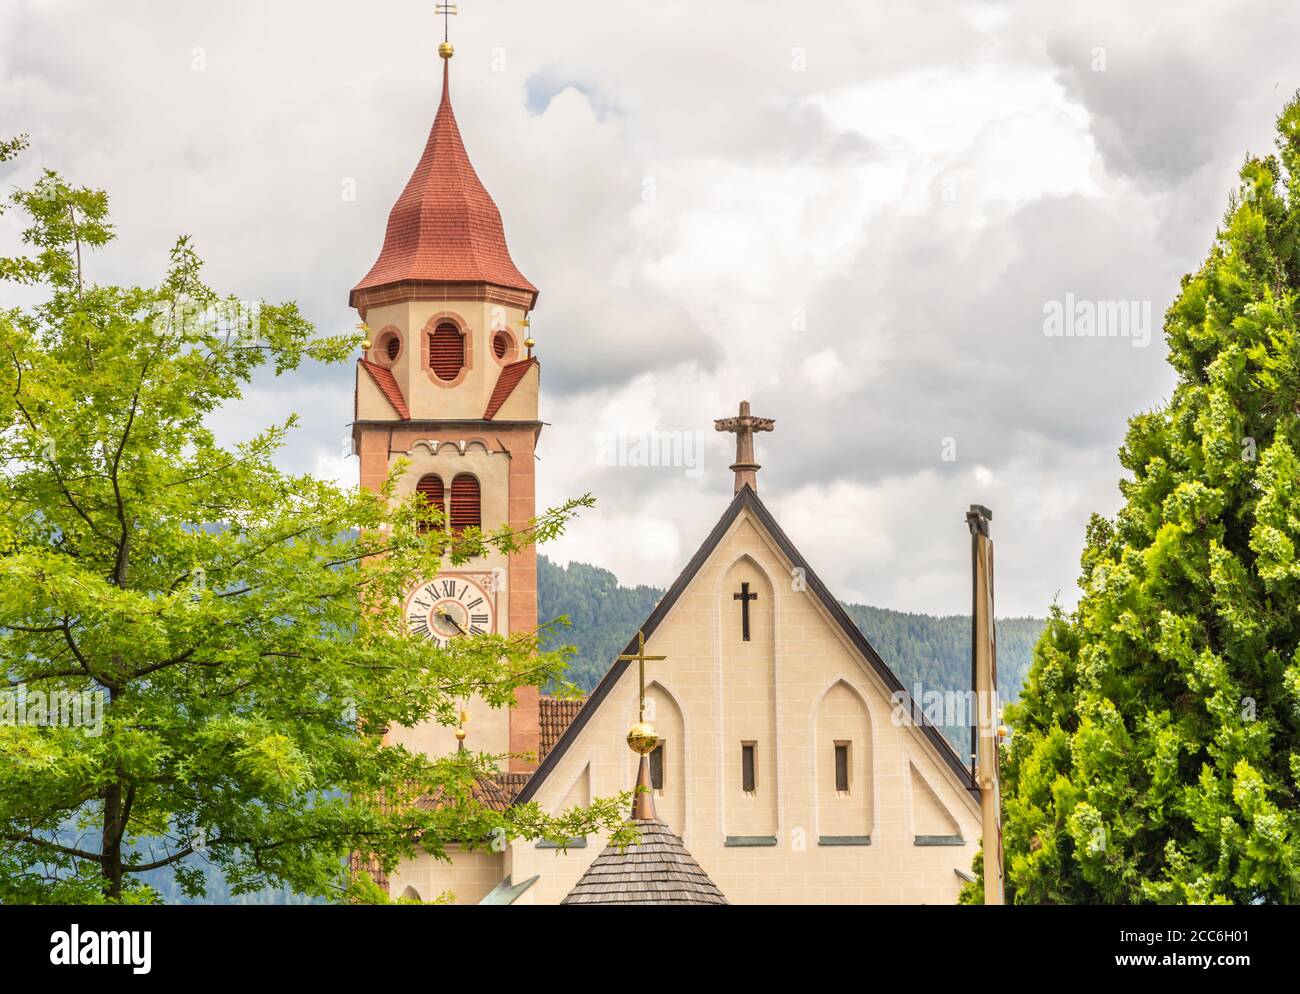 Die Kirche St. Johannes des Täufers in Dorf Tirol, bei Meran, Südtirol, Norditalien. Detail von Dach und Glockenturm. Stockfoto